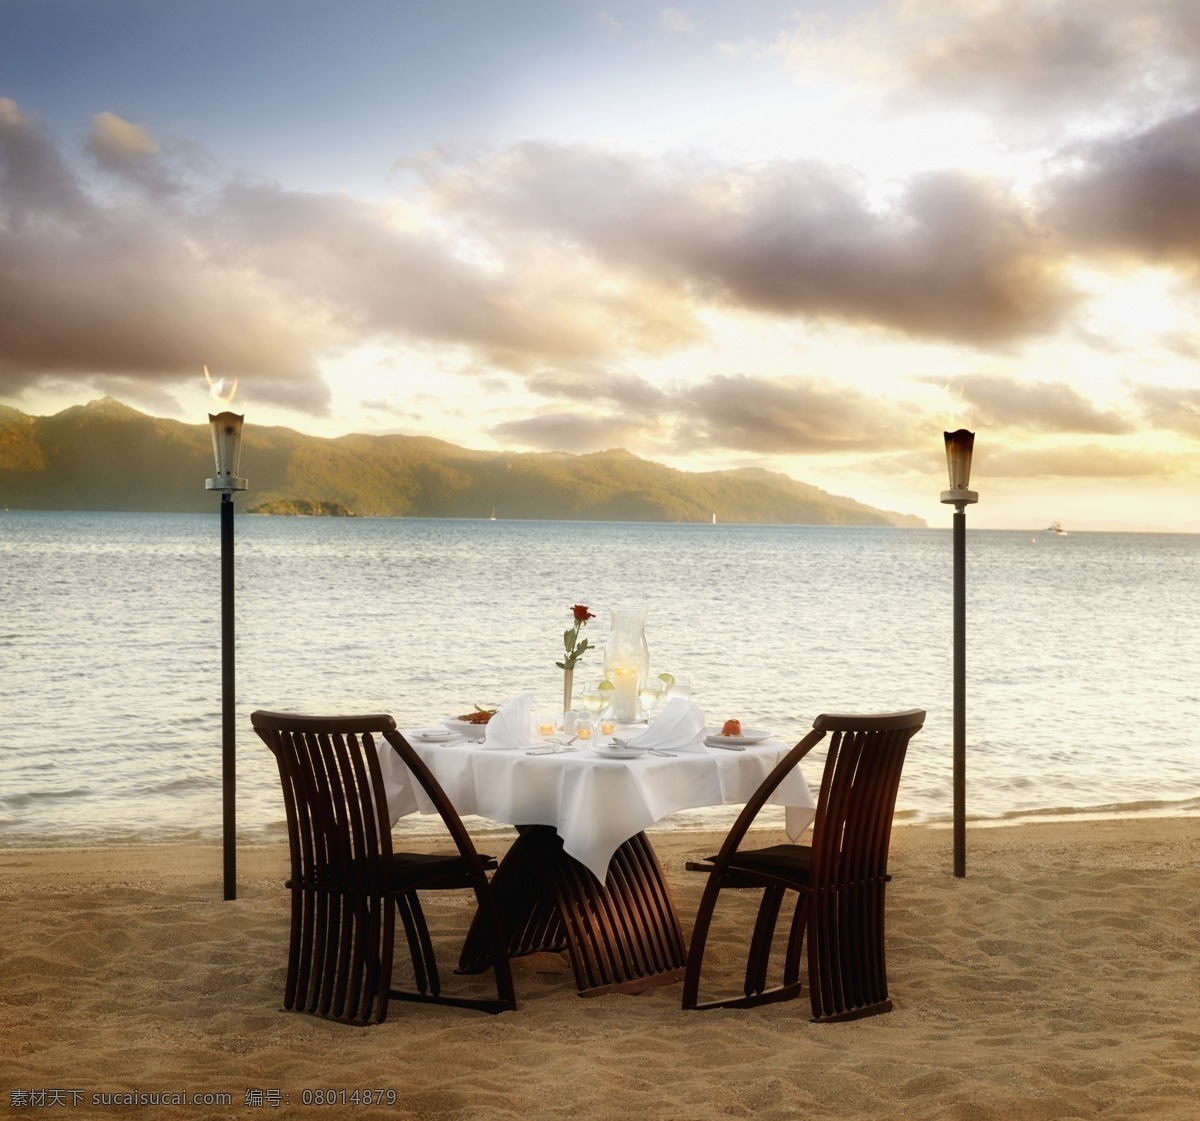 约会 晚餐 浪漫 海边 海滩 沙滩 玫瑰花 玫瑰 火把 情人 情人节 美食 咖啡 丰盛 西餐美食 餐具 餐饮美食 娱乐休闲 生活百科